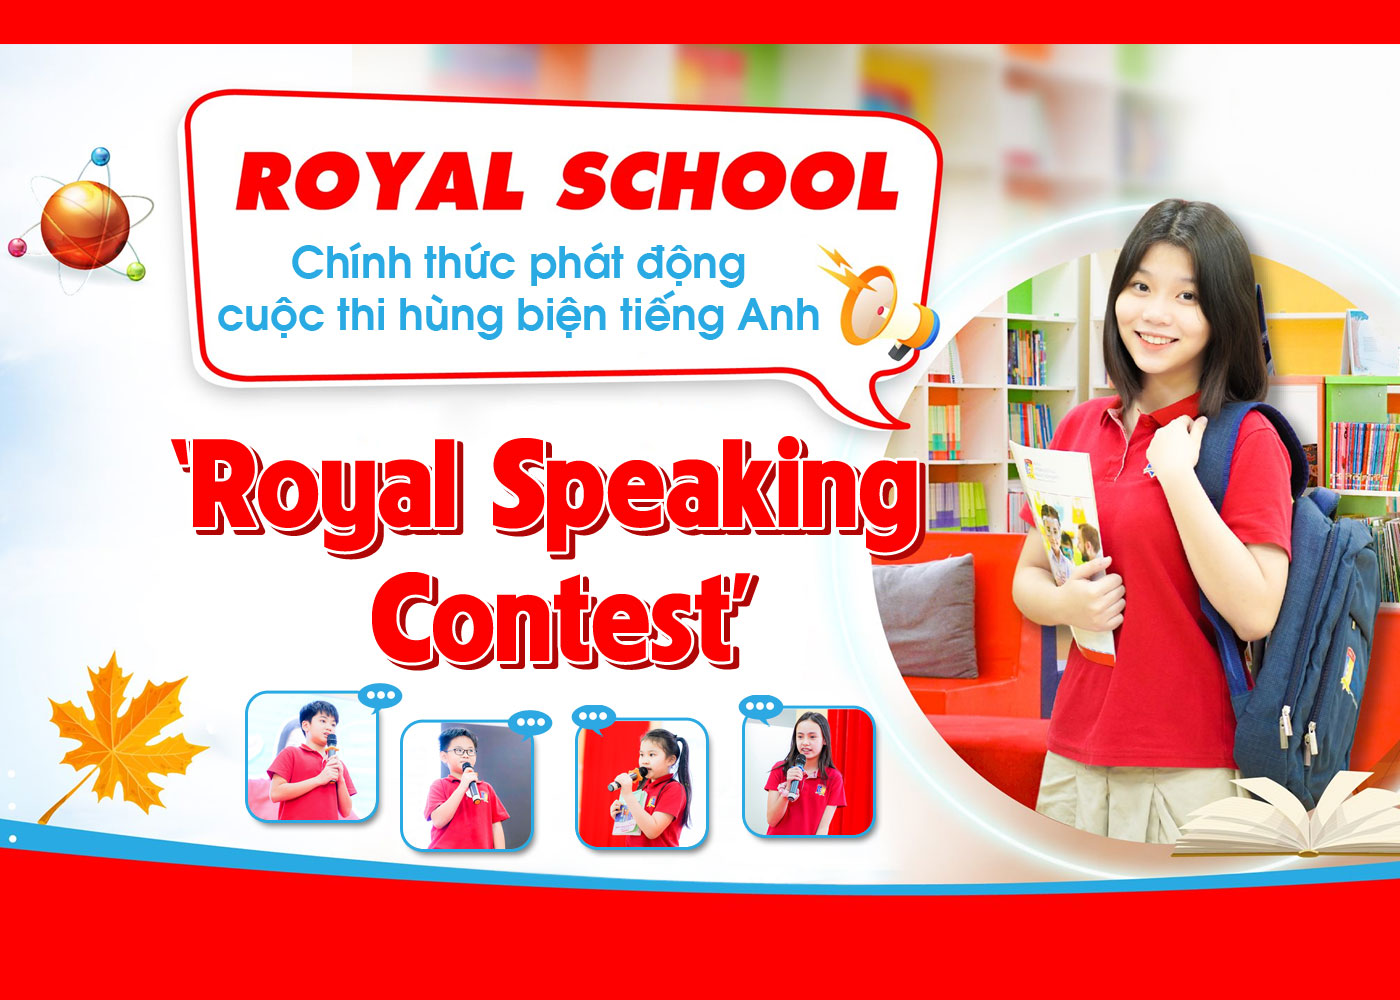 Chính thức phát động cuộc thi hùng biện tiếng Anh 'Royal Speaking Contest' - Ảnh 1